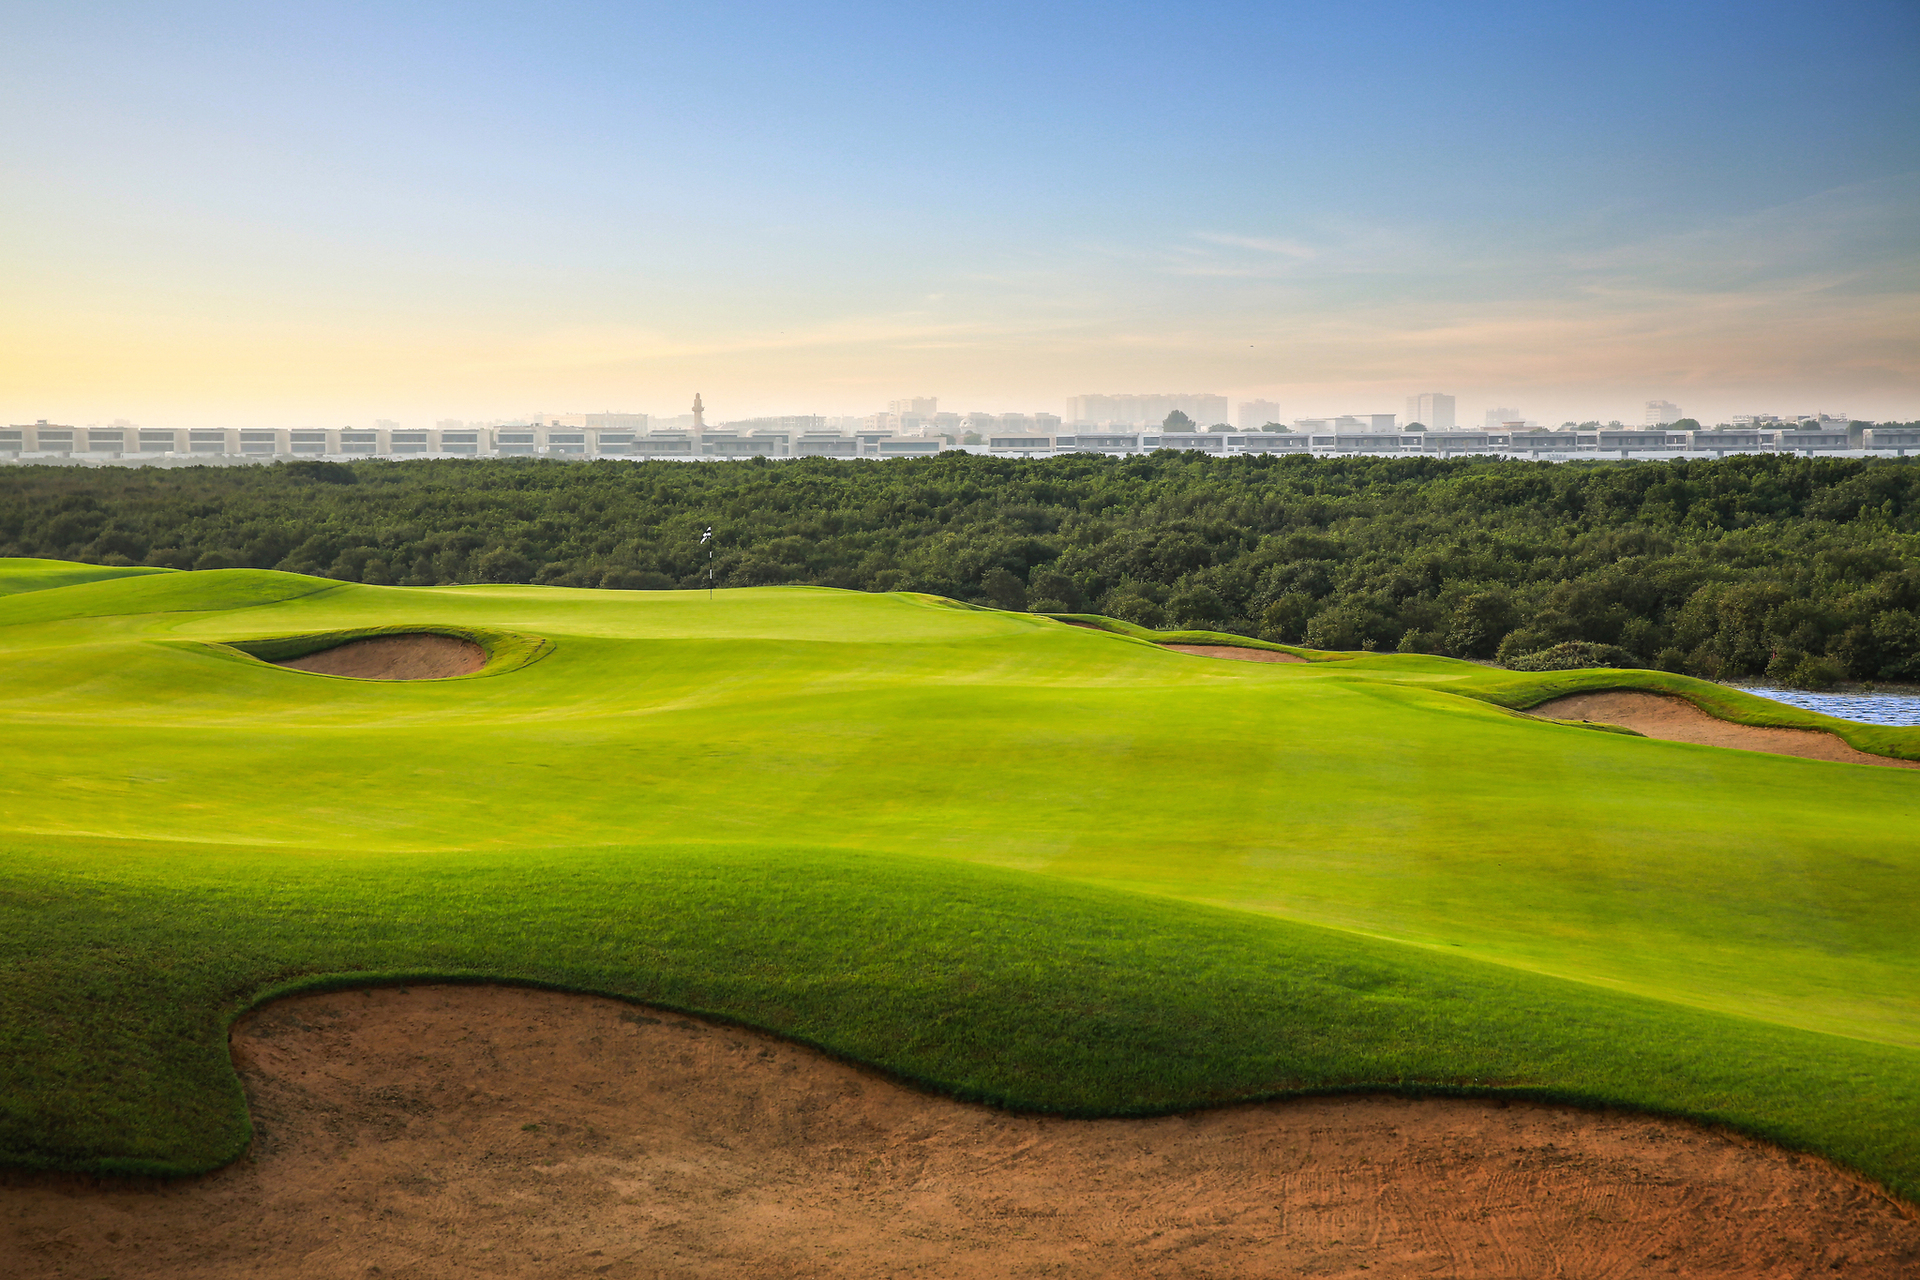 Вы получите доступ к Al Zorah Golf Club и резервации мангровых лесов (100 гектаров). Зеленая территория отеля делает его похожим на оазис, спрятанный в недрах пустыни.